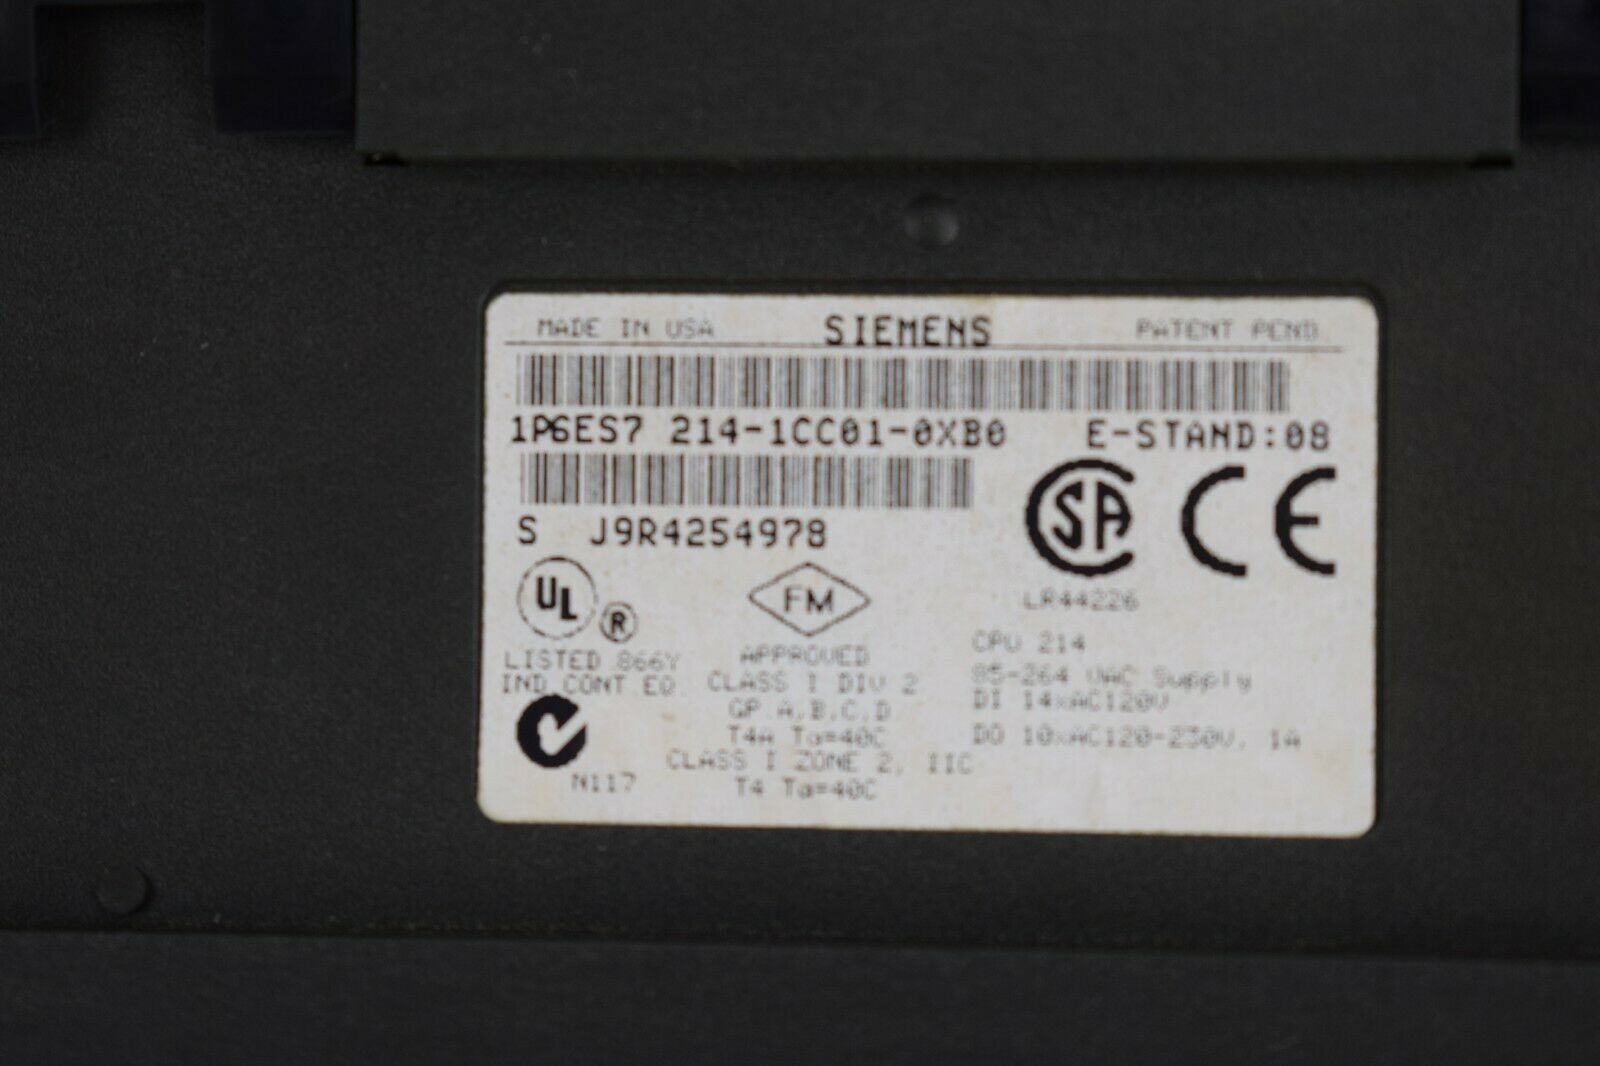 Siemens simatic S7 CPU 214 6ES7 214-1CC01-0XB0 ( 6ES7214-1CC01-0XB0 )